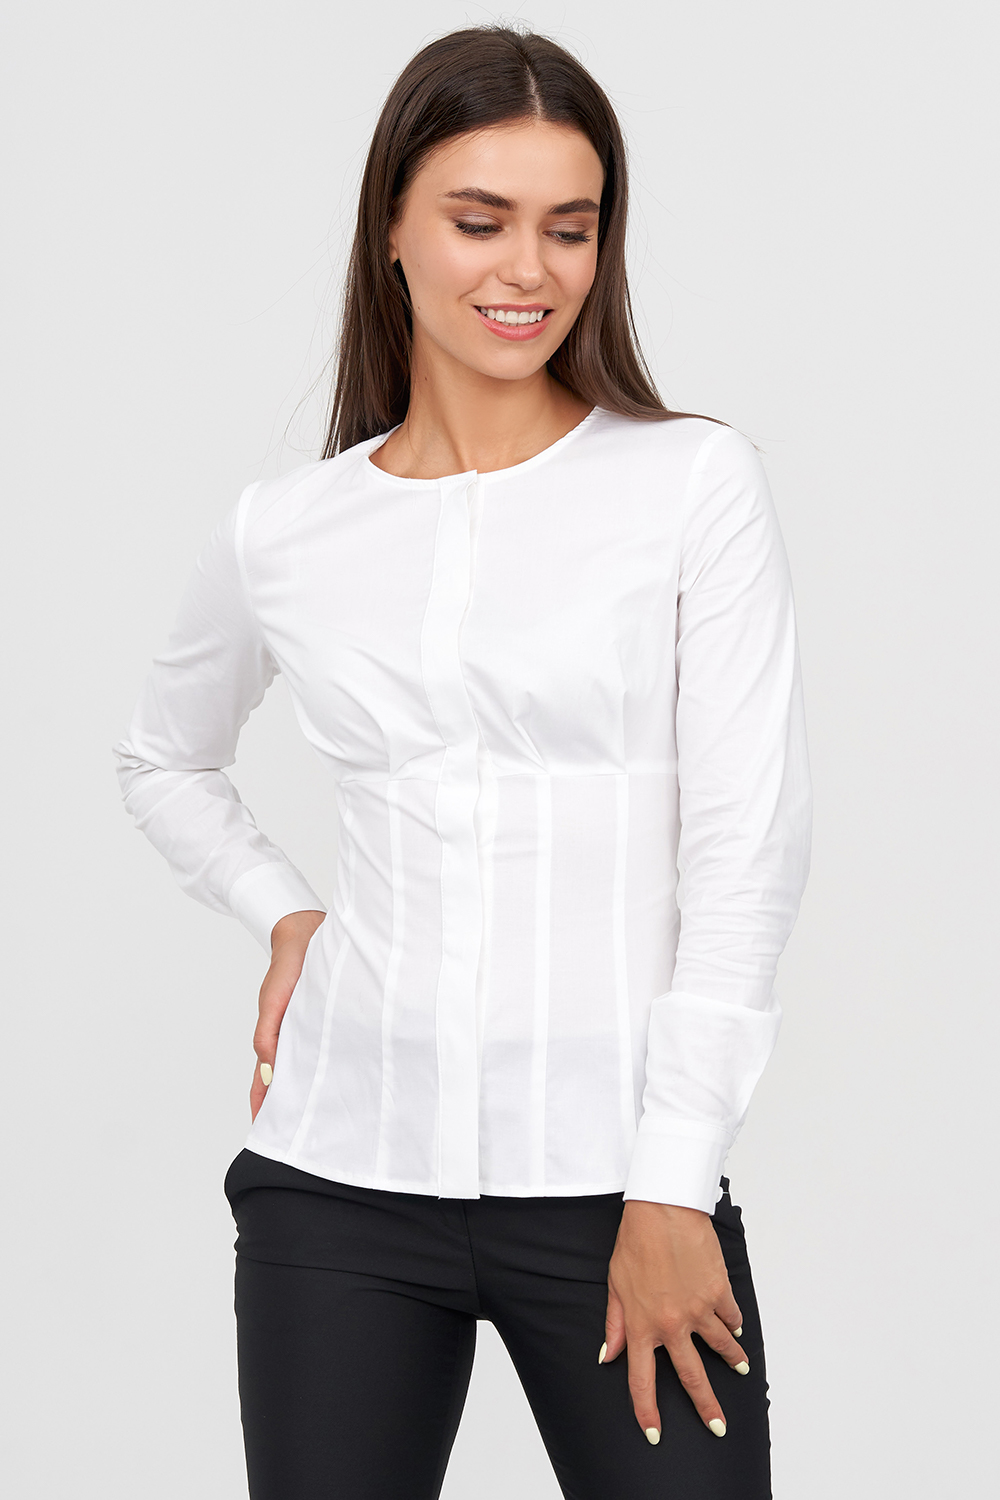 Интернет магазин белых блузок. Блузка классическая. Классическая белая блузка. Блузки белого цвета. Женская белая блузка Натали.